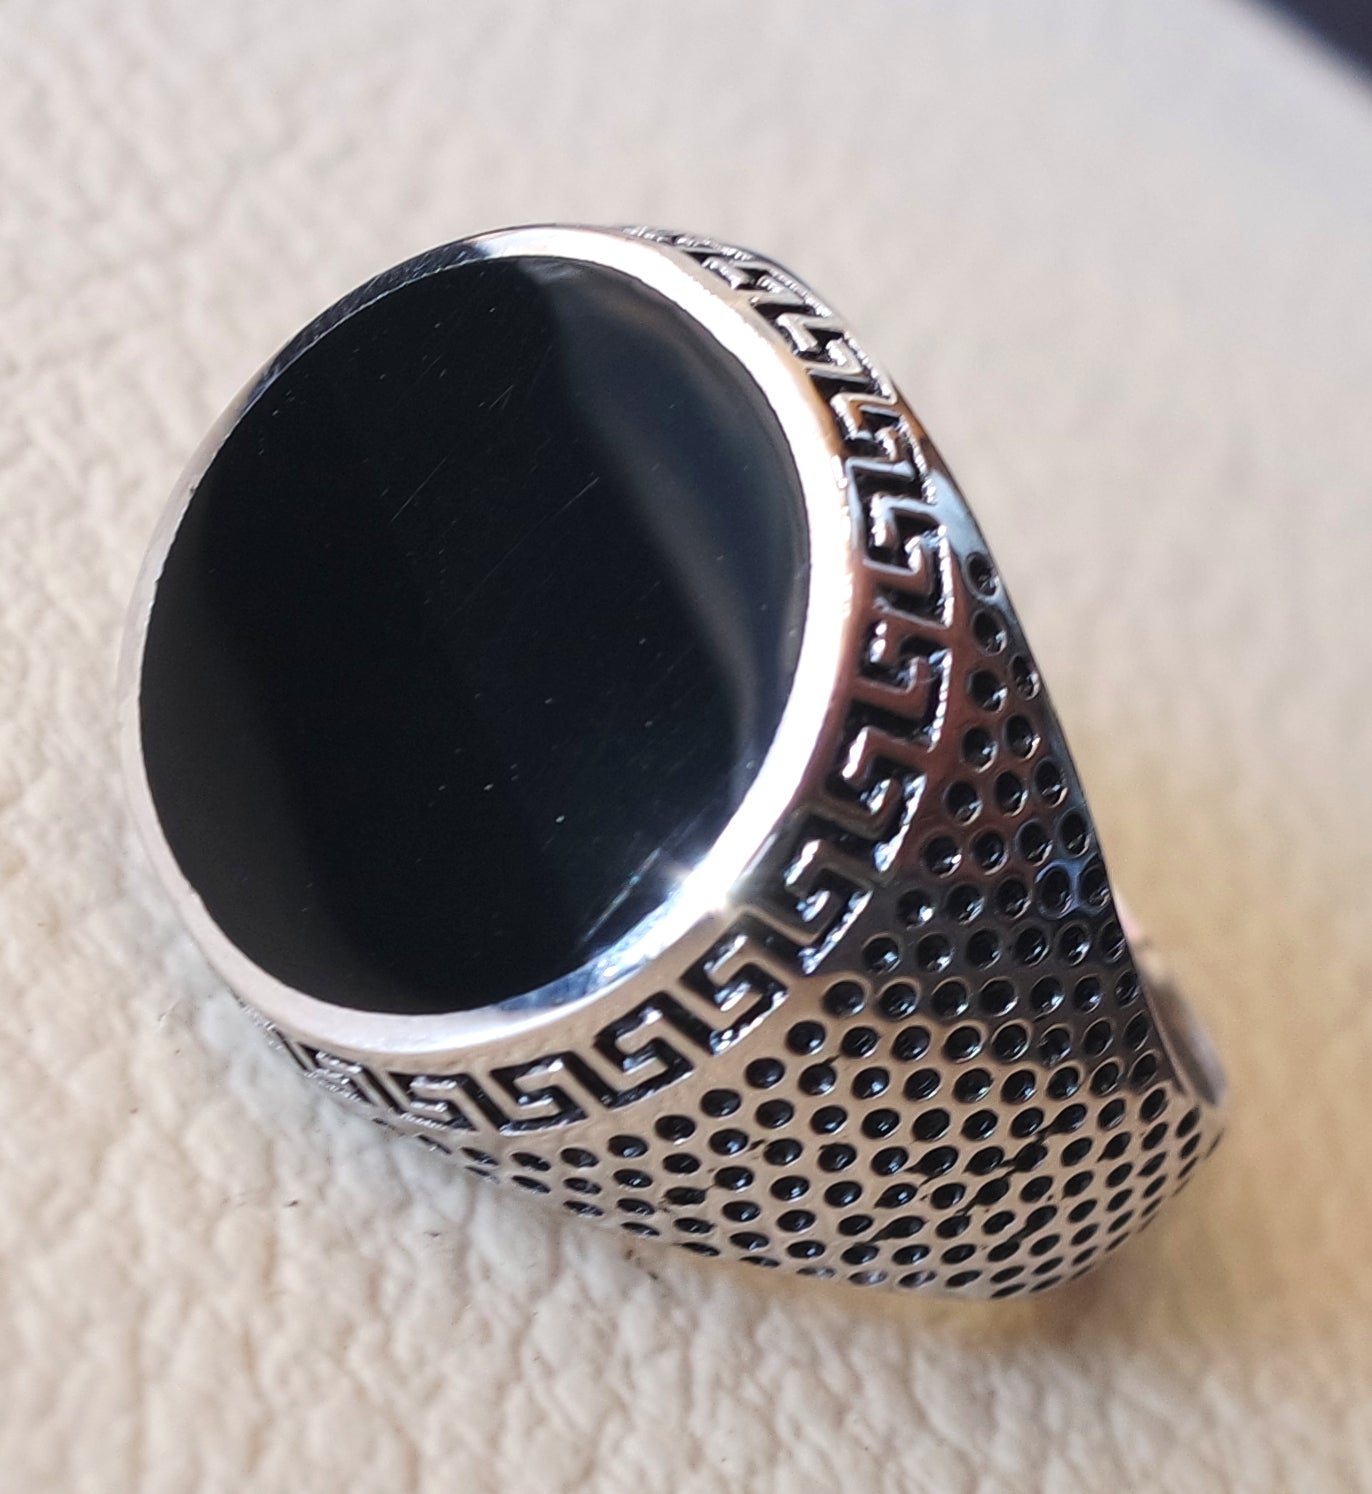 black enamel round man ring silver 925 jewelry all sizes – Abu Mariam Jewelry